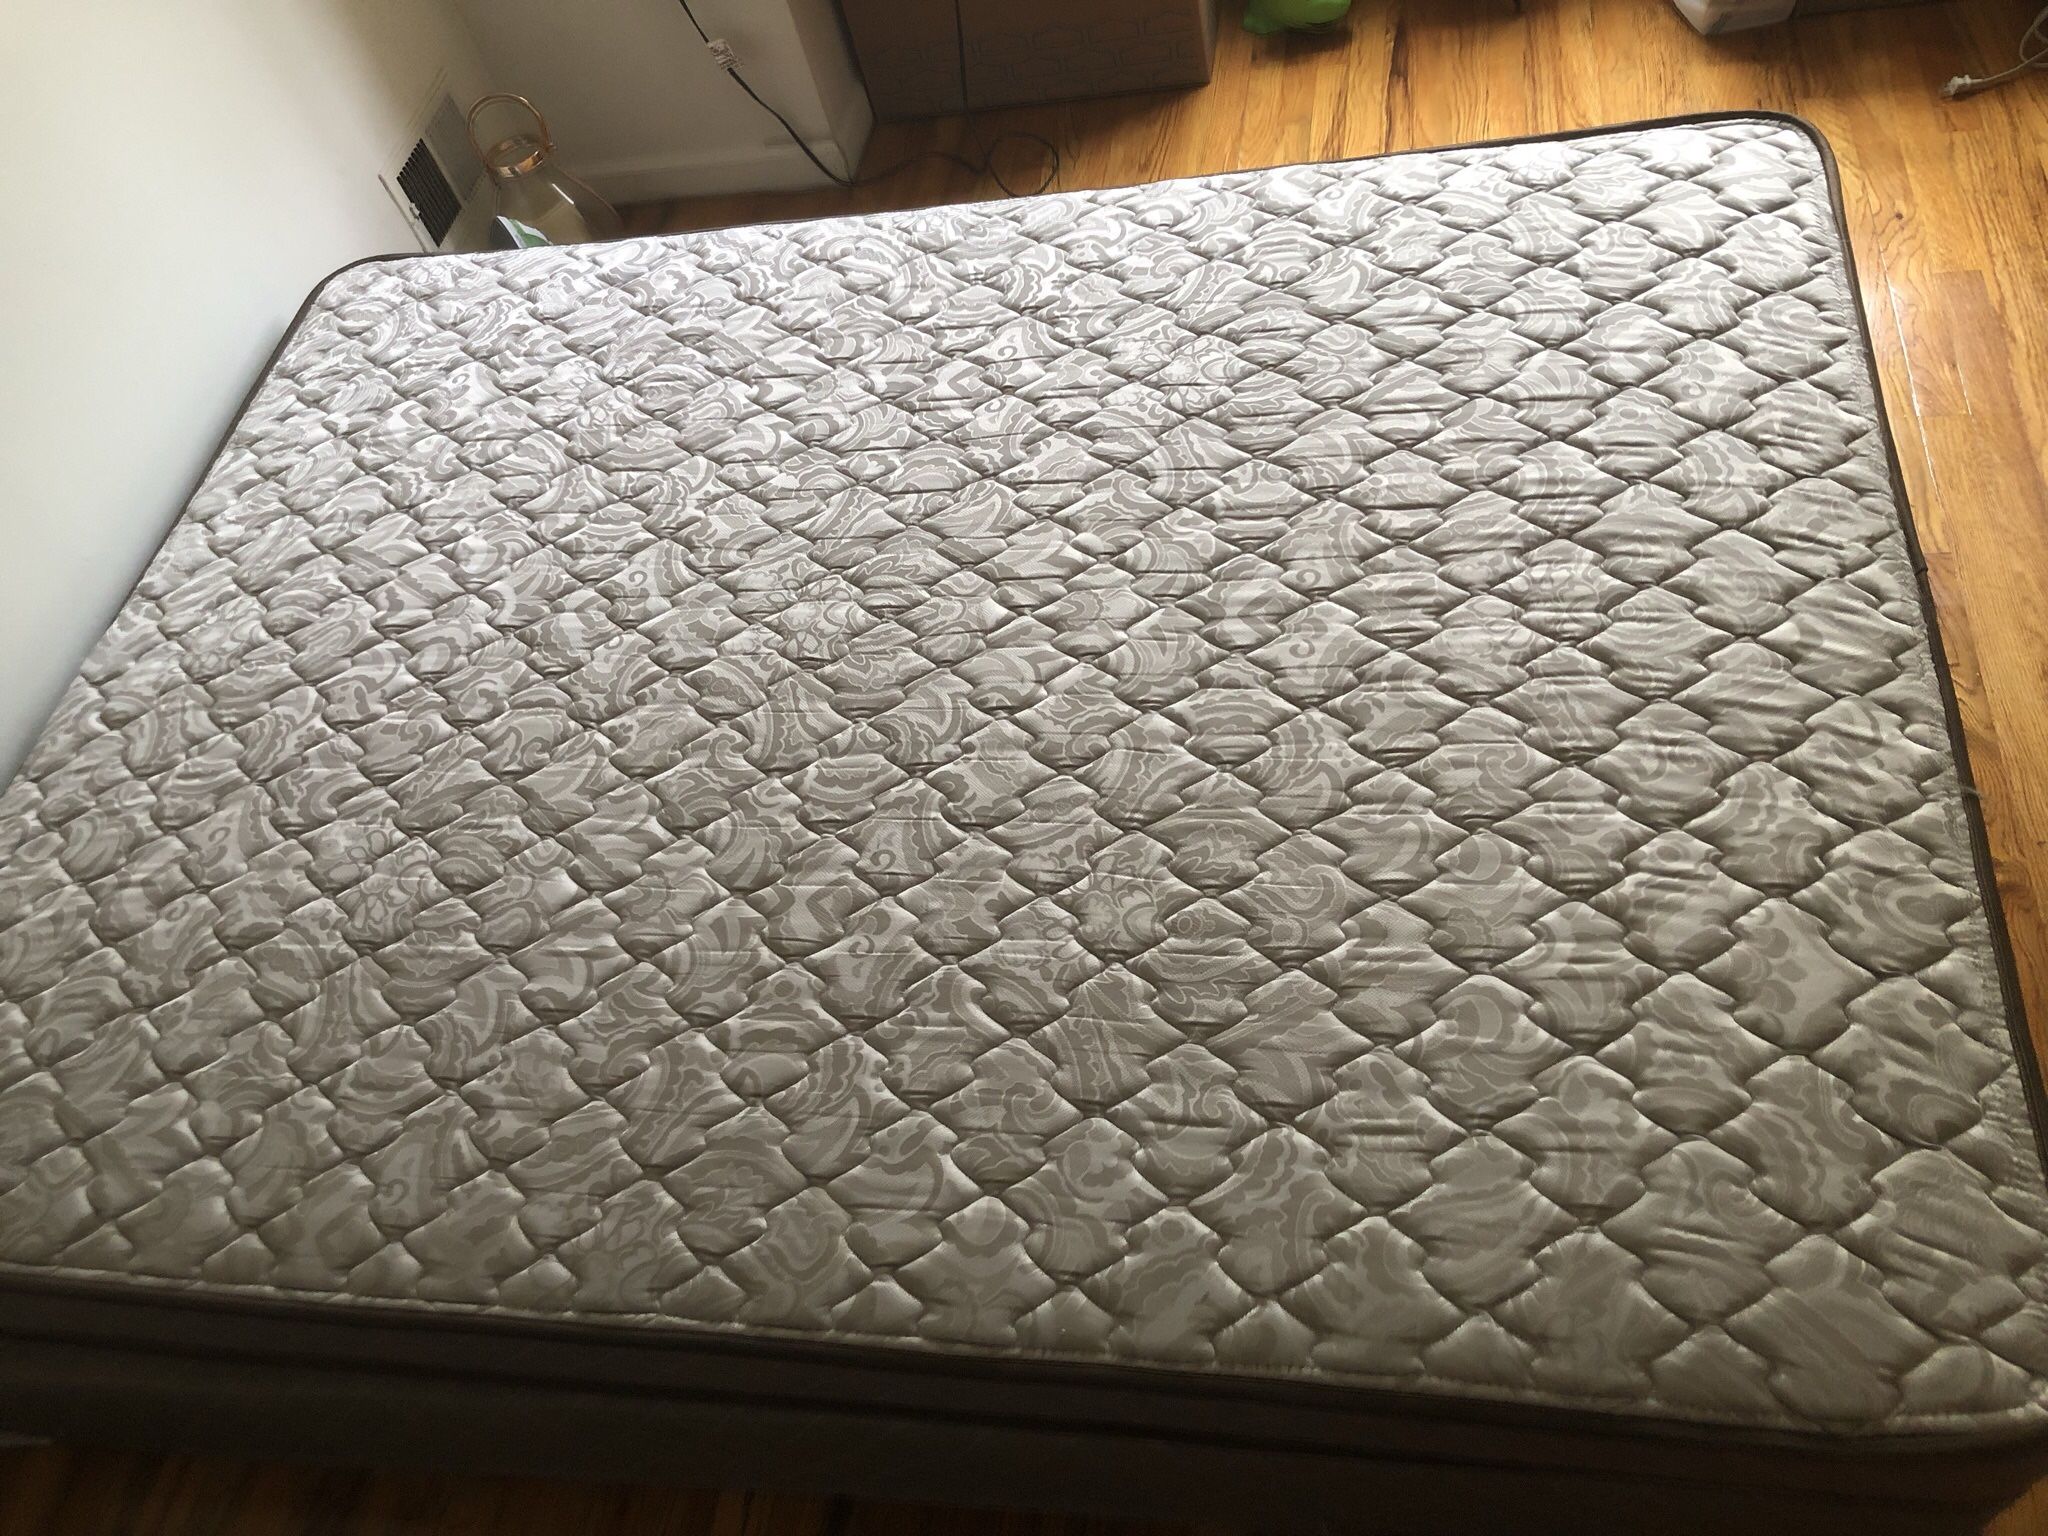 Mattress And Bed Frame From mattress firm